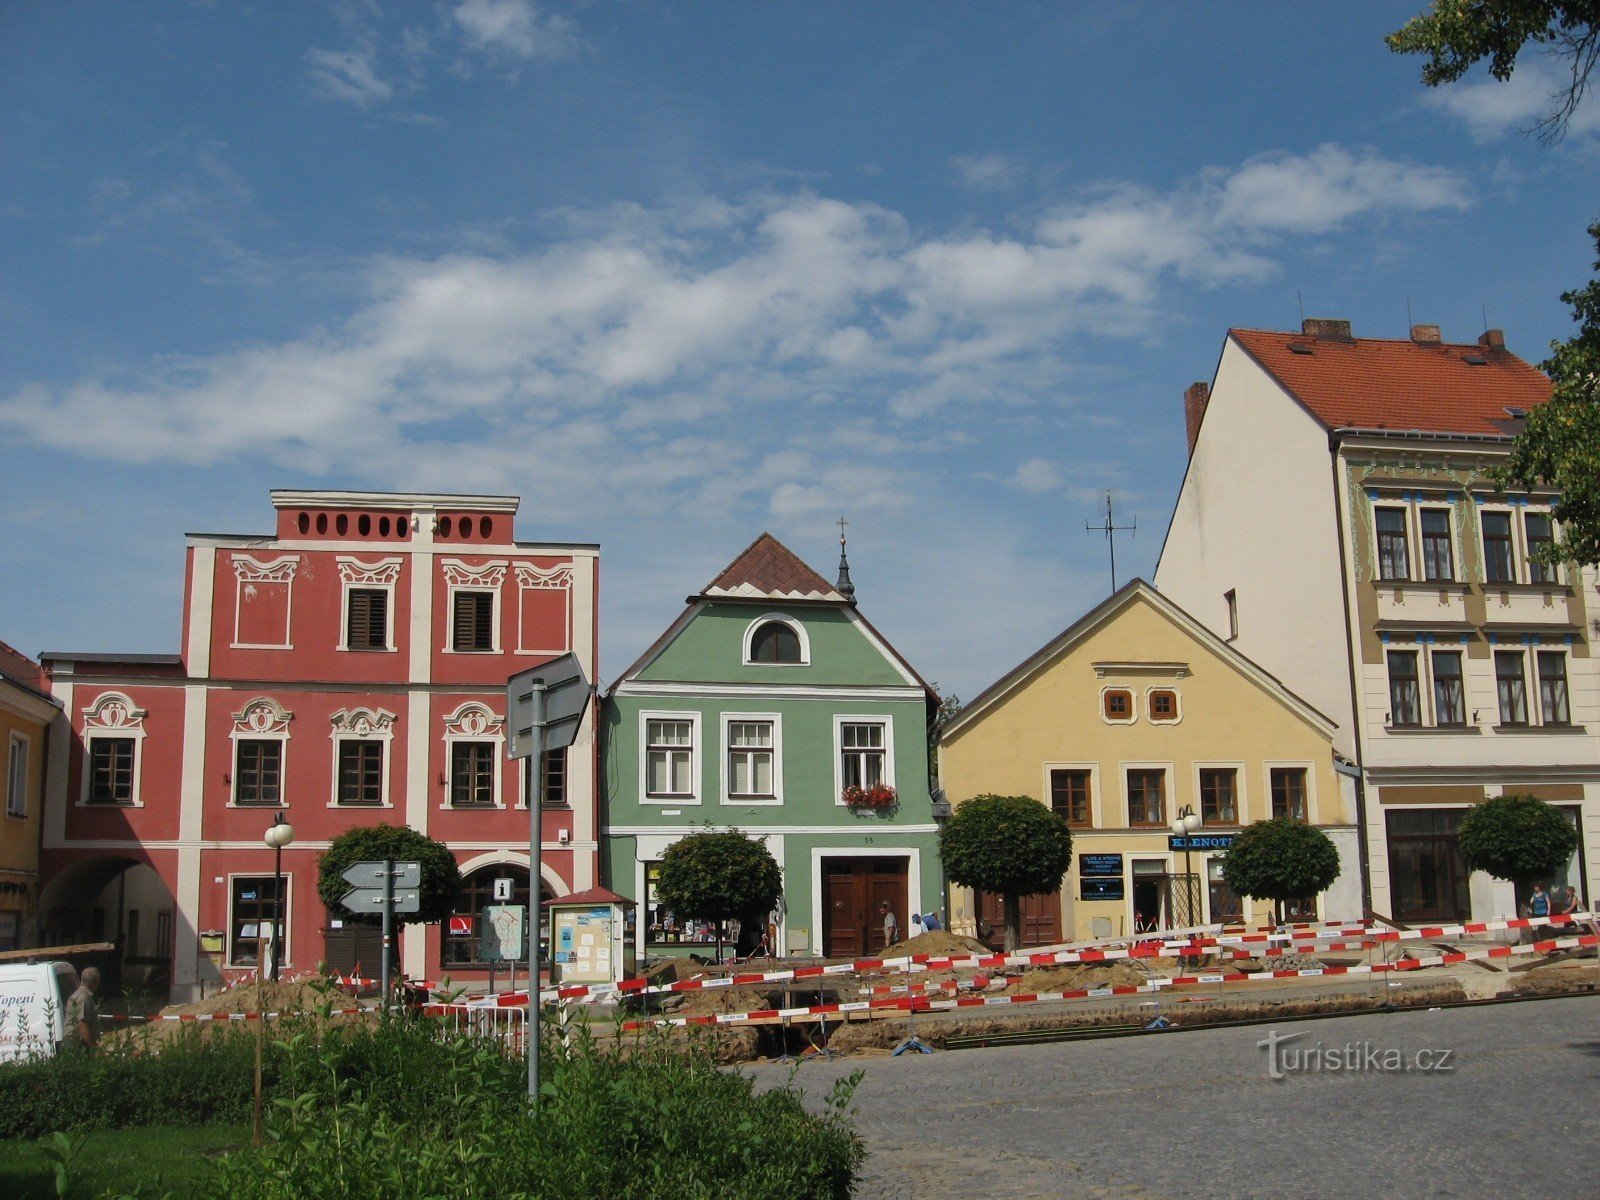 La parte mejor conservada de las casas de pueblo en la parte alta de la plaza del Čsl. del ejercito